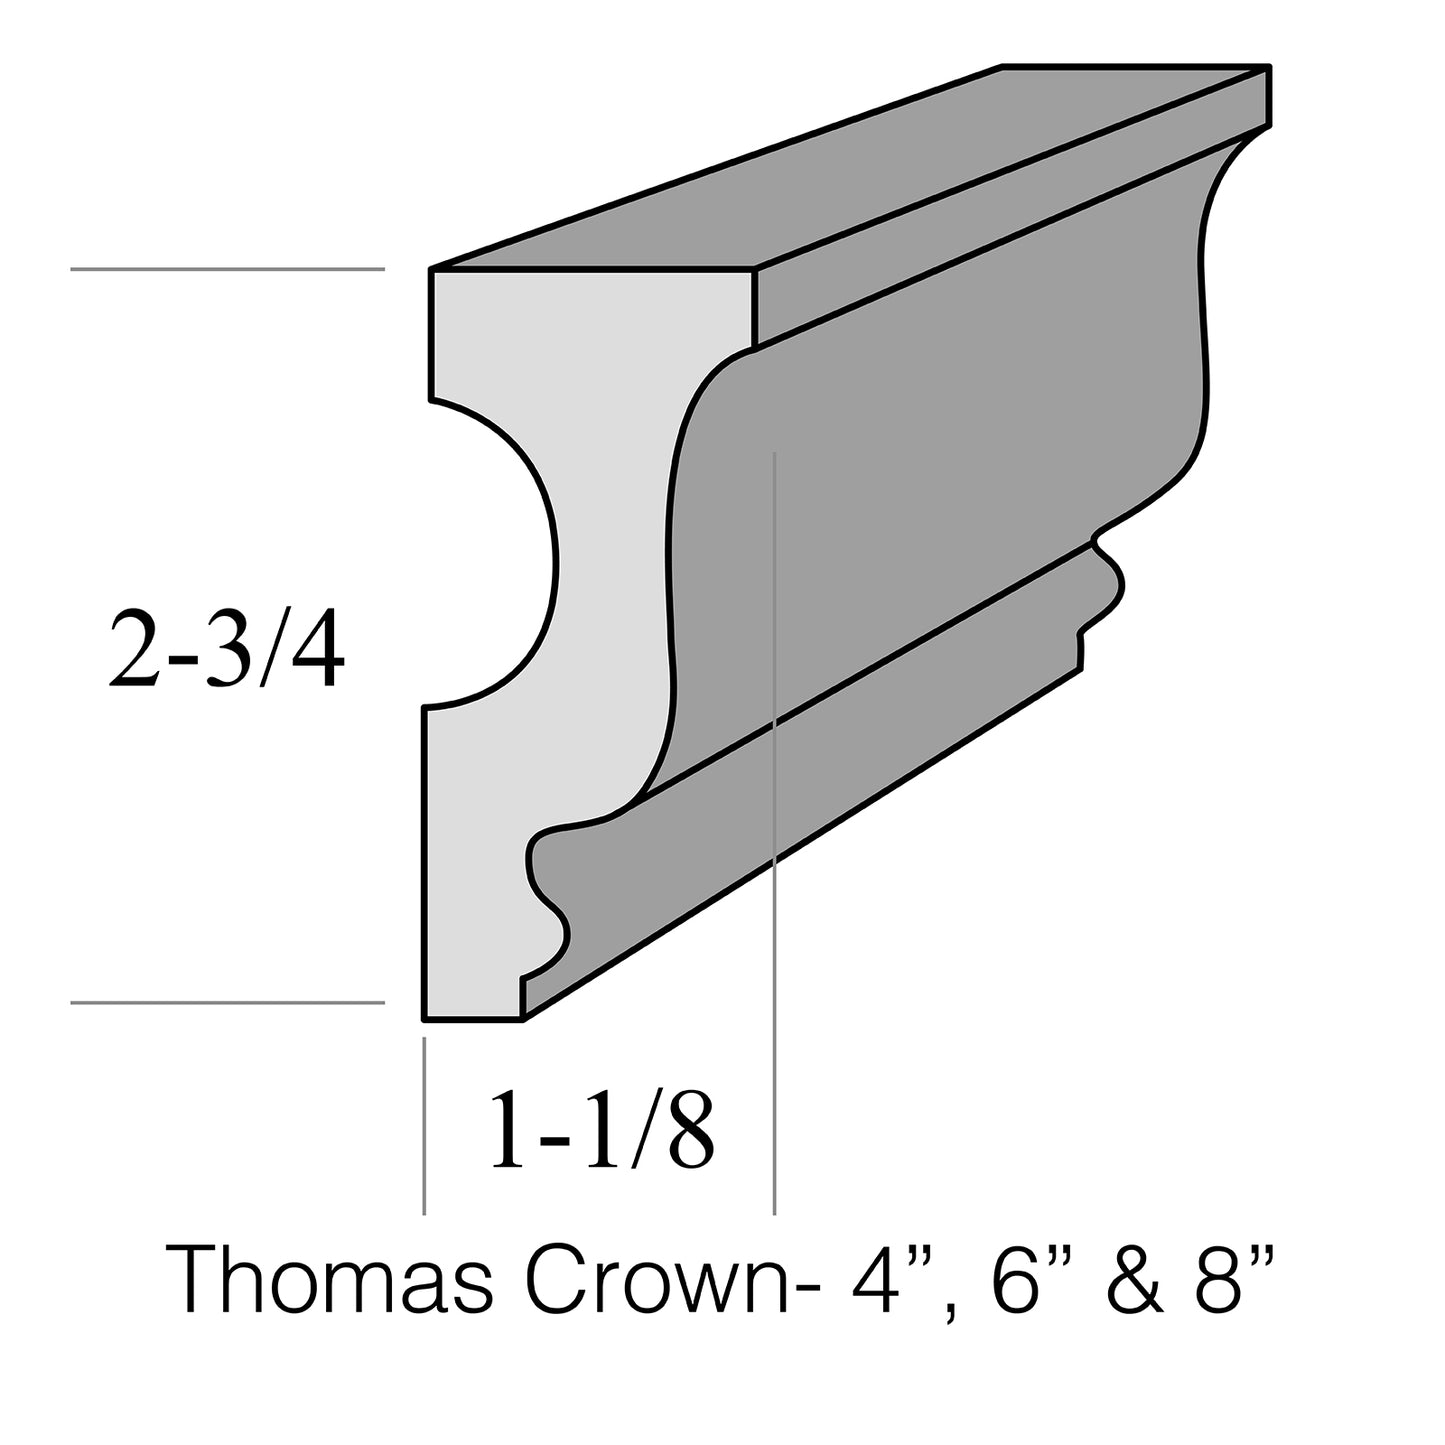 Thomas Crown 8"